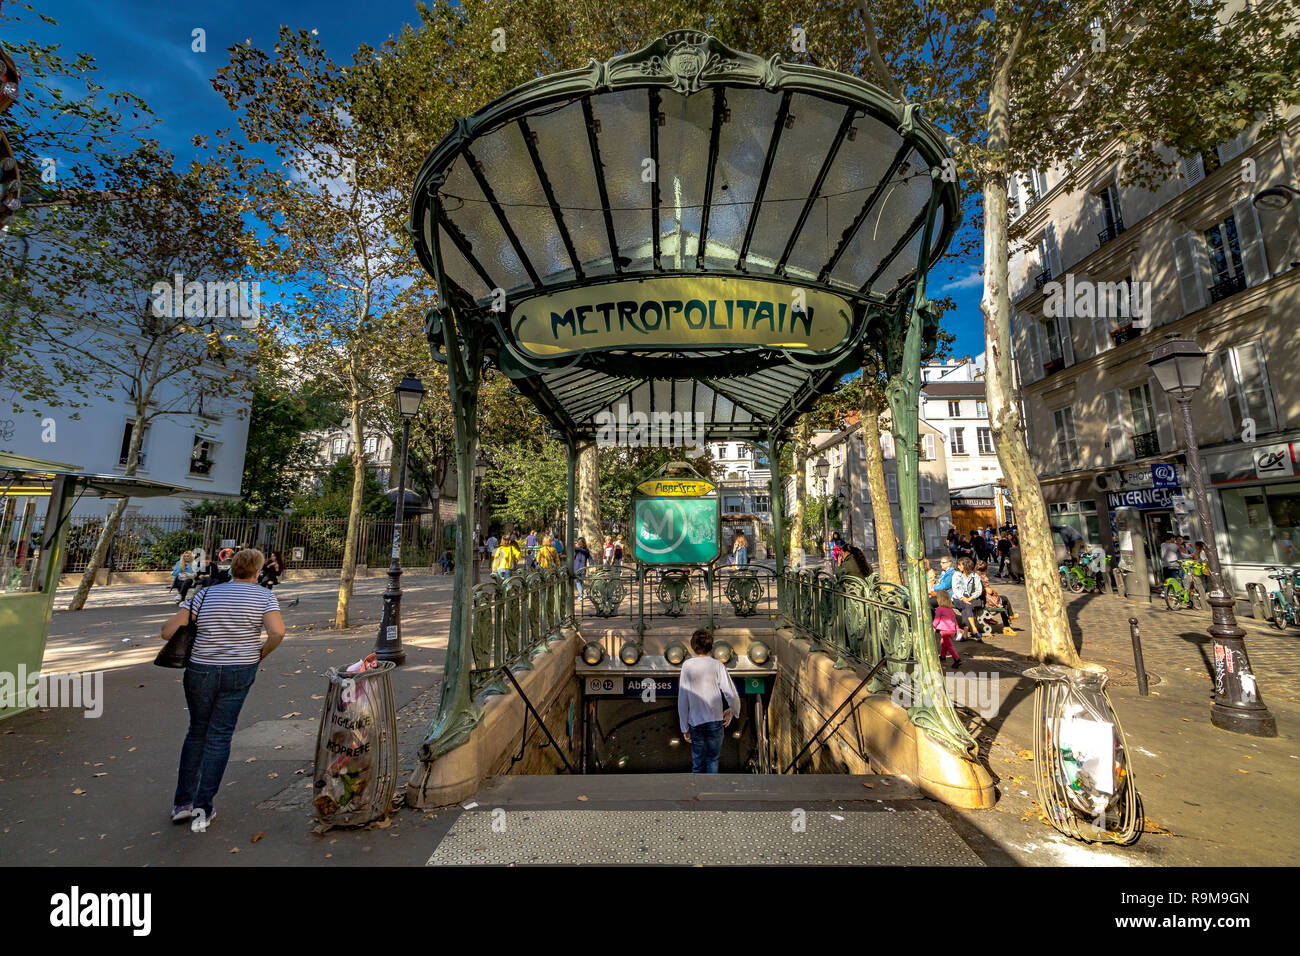 La stazione della metropolitana Abbesses a Montmartre, Parigi, l'entrata coperta di vetro della stazione o édicule è stata progettata da Hector Guimard, Parigi, Francia Foto Stock